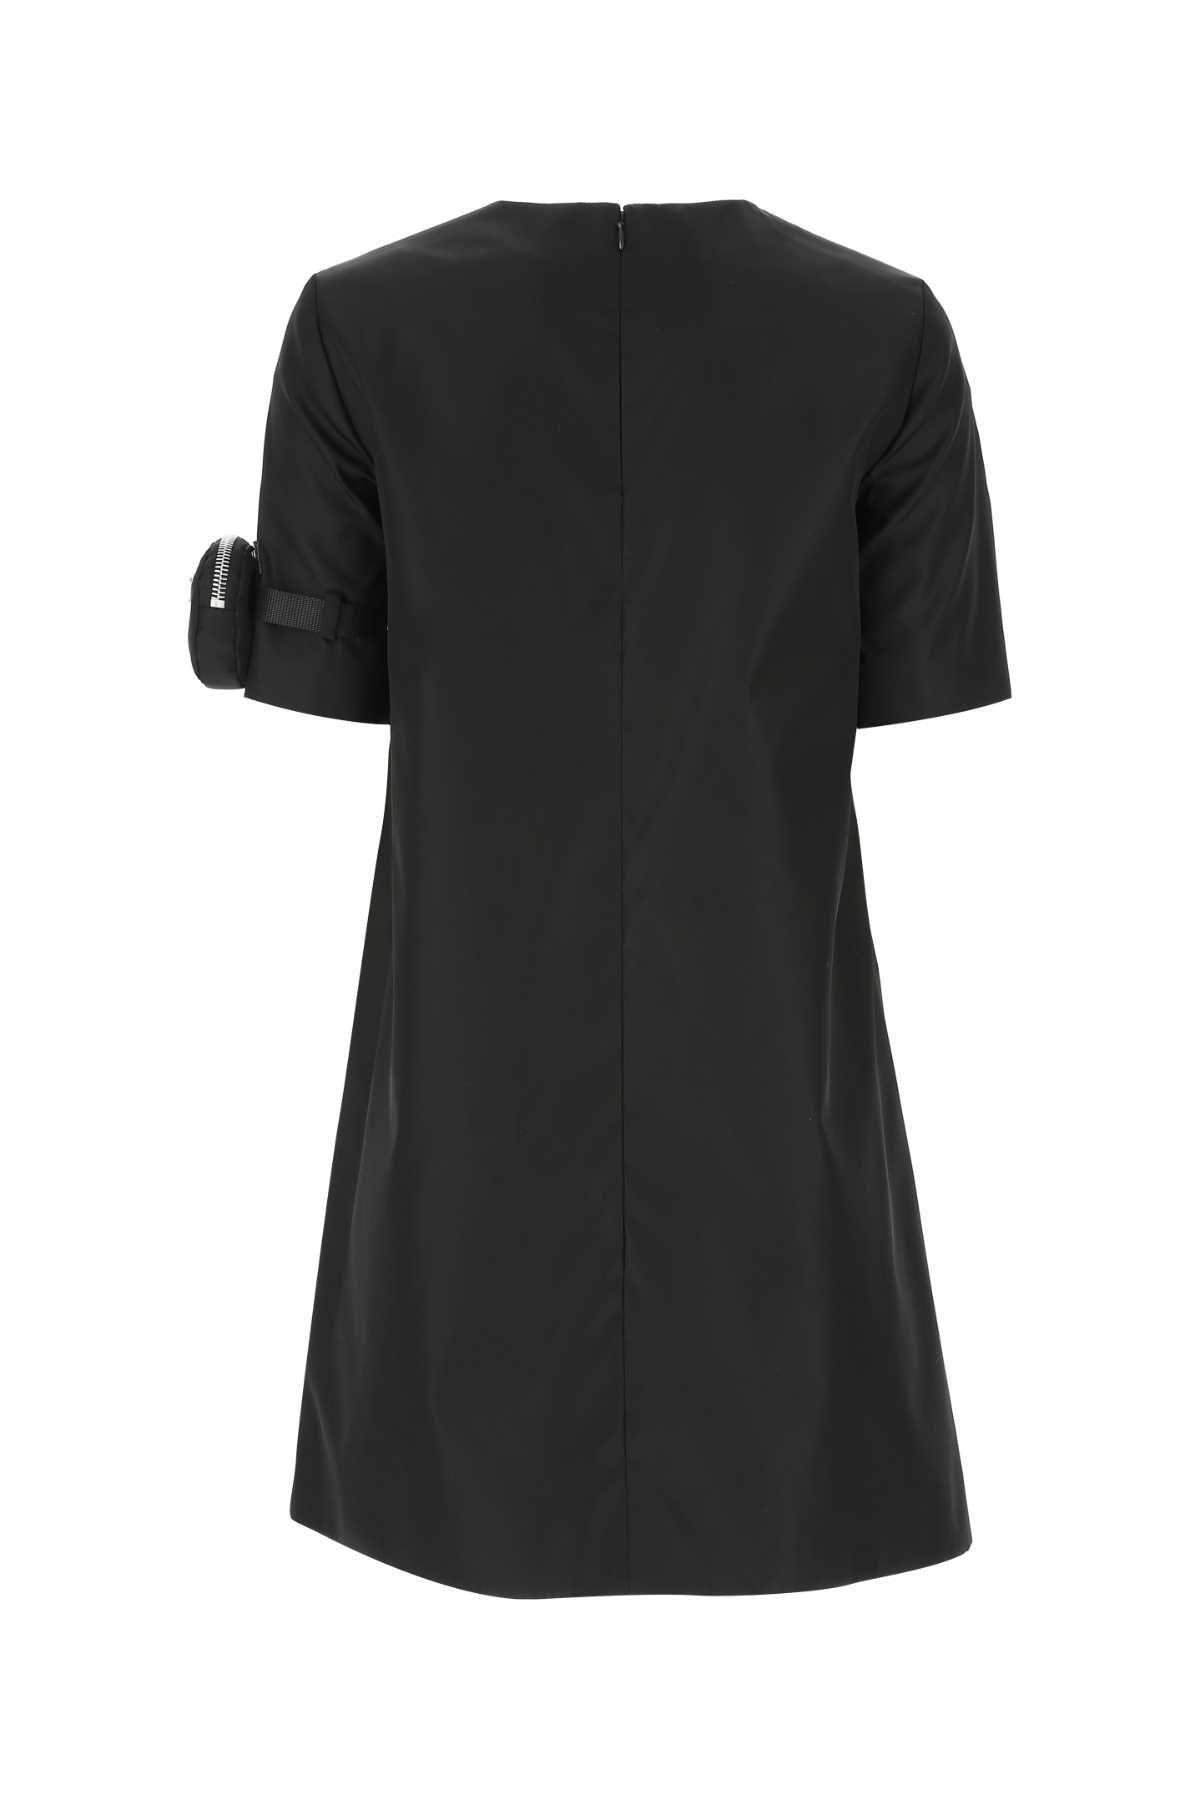 Prada Black Re-nylon Dress In F0002